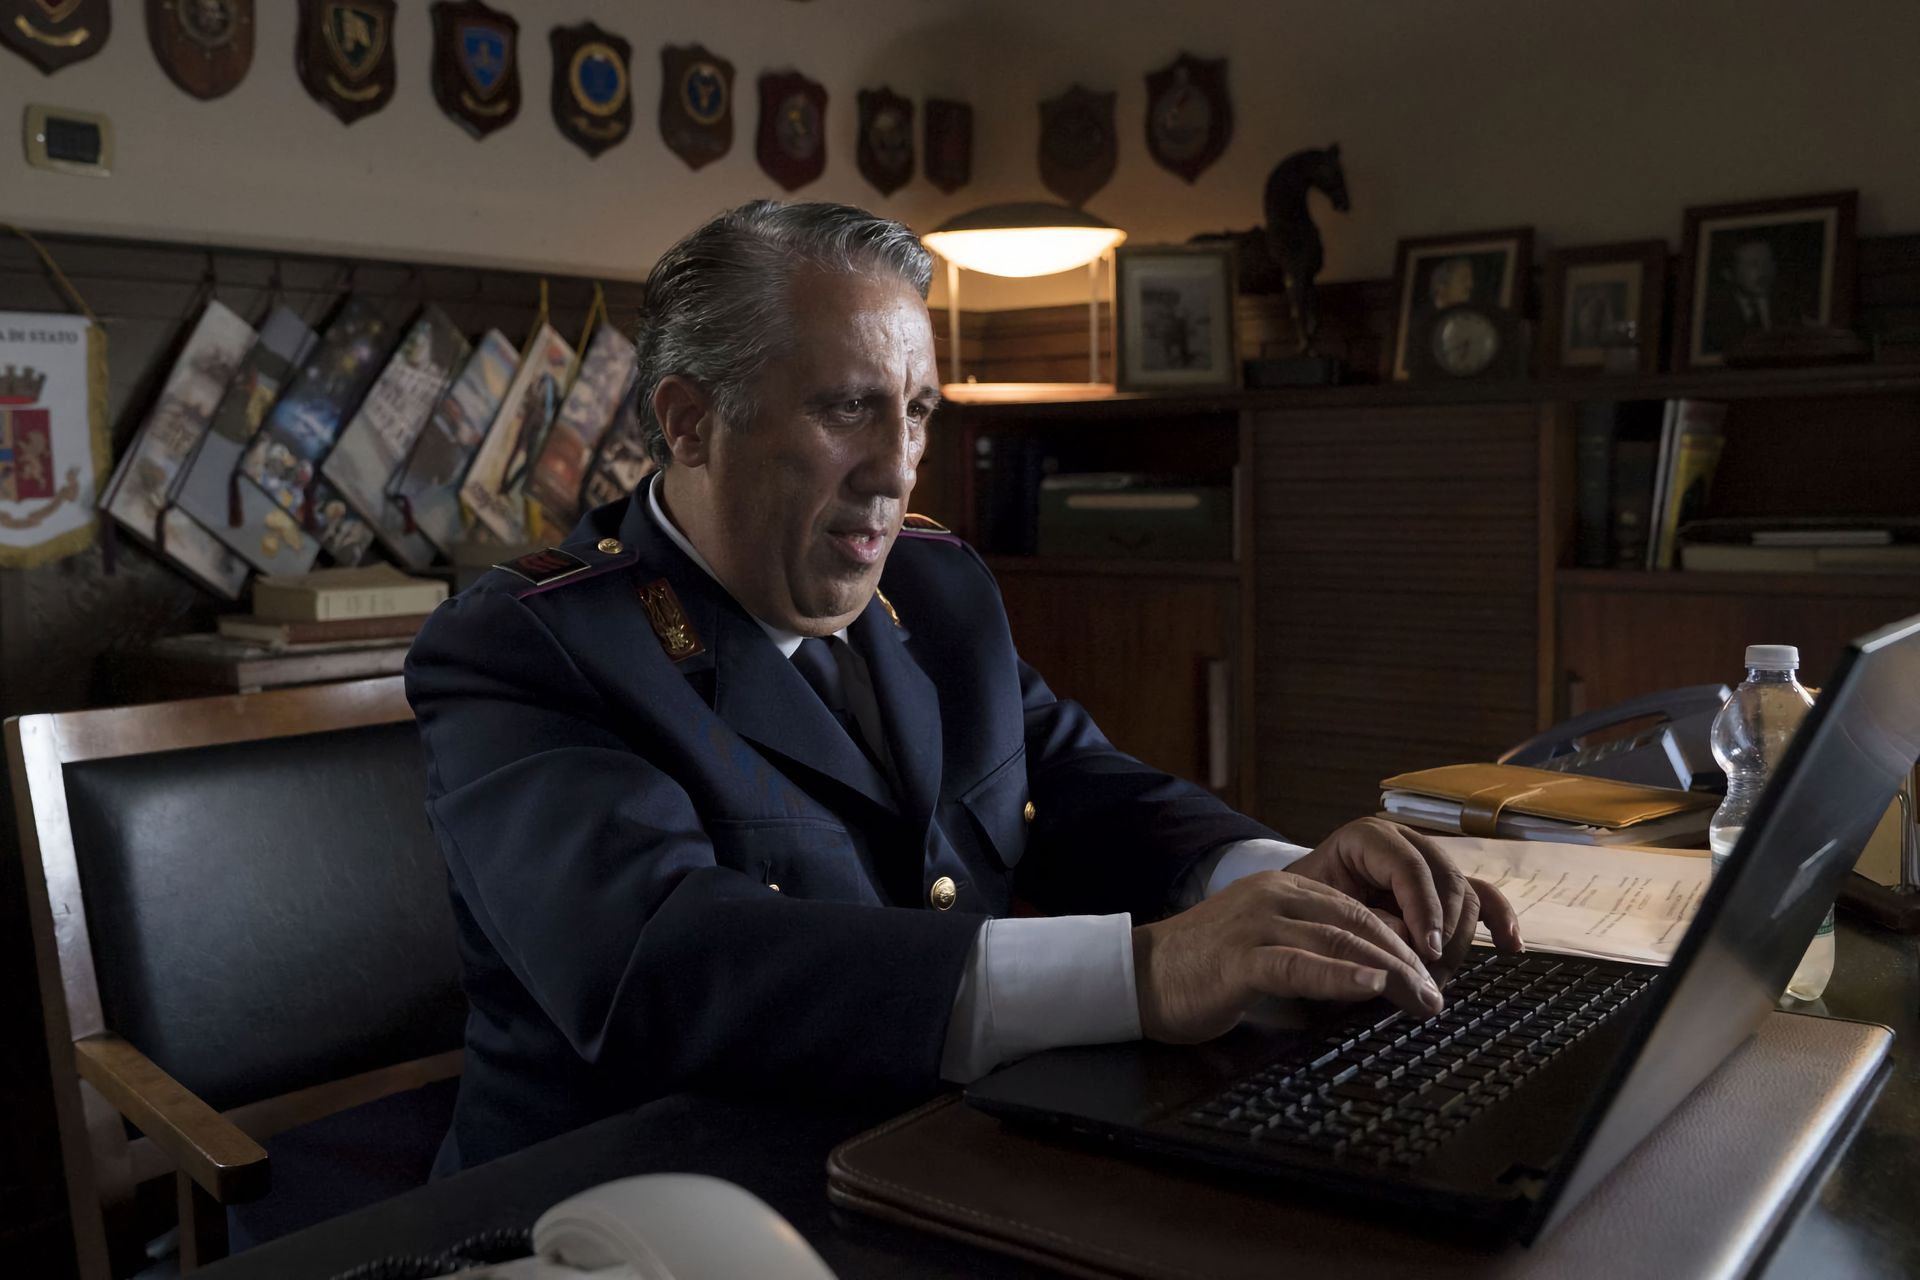 הסוכן קטרלה בסדרת הטלוויזיה "פקד מונטלבנו" הוא השוטר היחיד שרגיל להשתמש במחשב